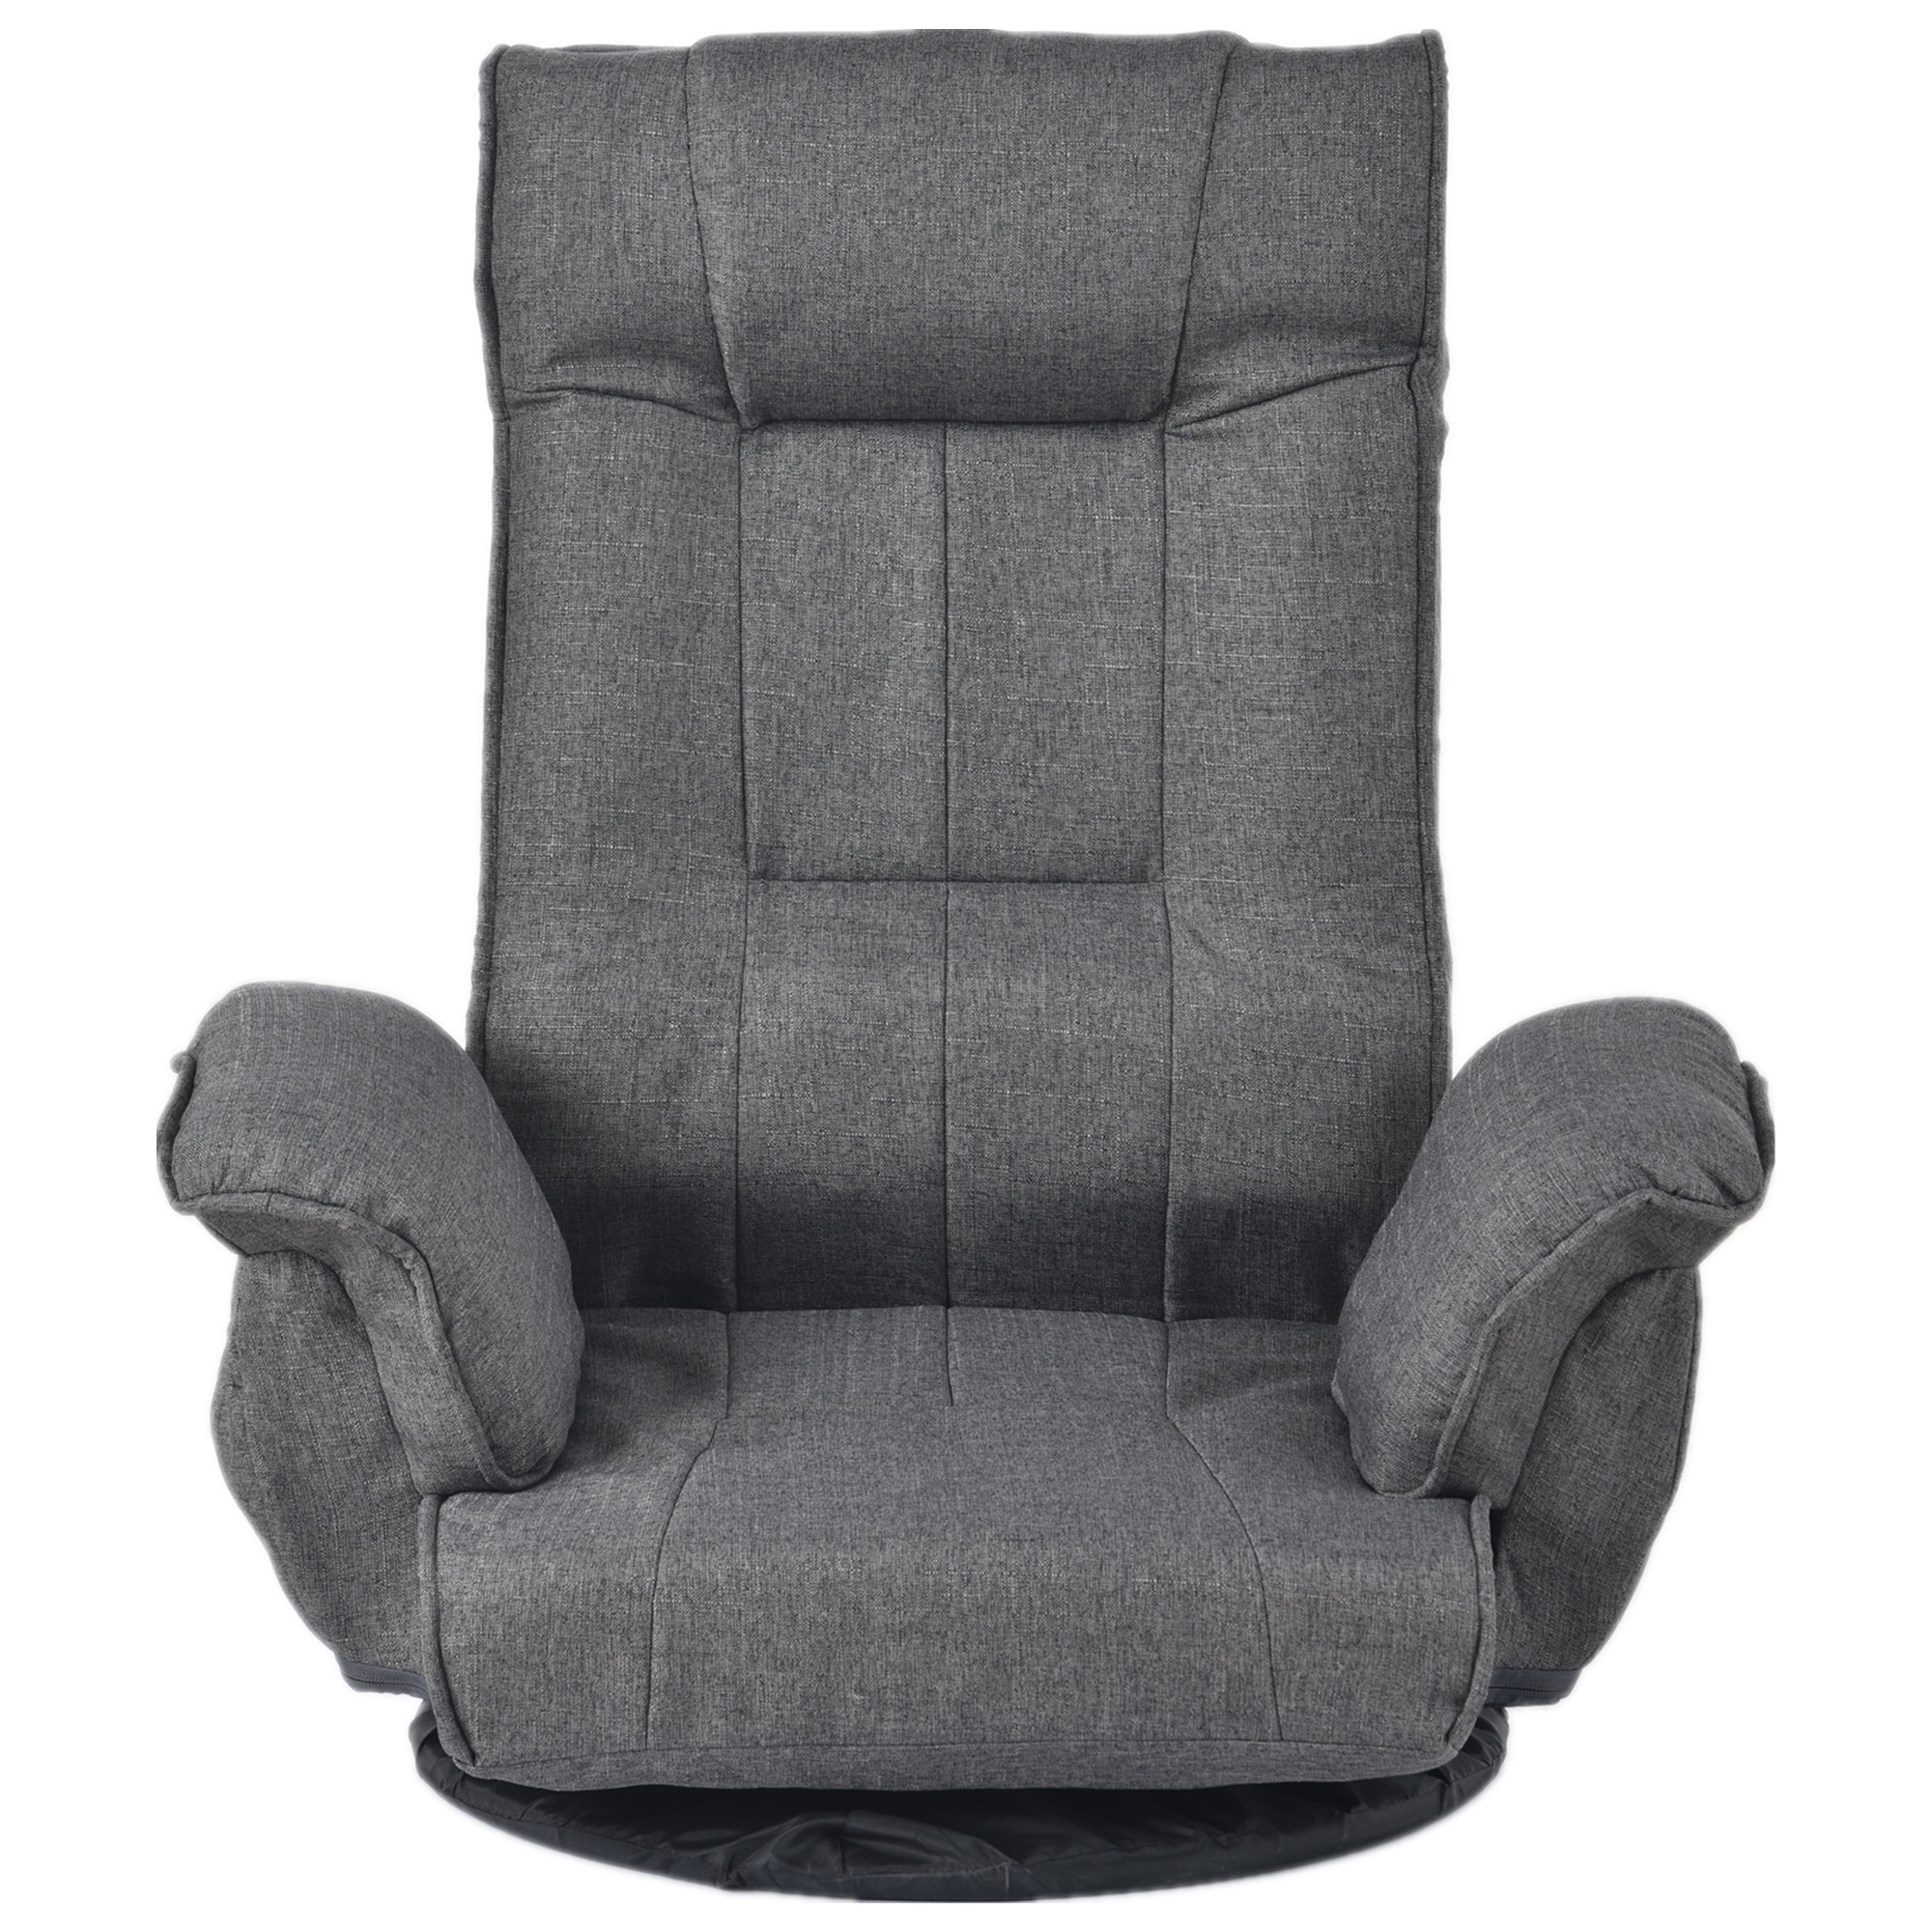 商品サイズ74×73×45cm回転式座椅子 肘掛け ハイバック リクライニング 1人掛けソファー おしゃれ